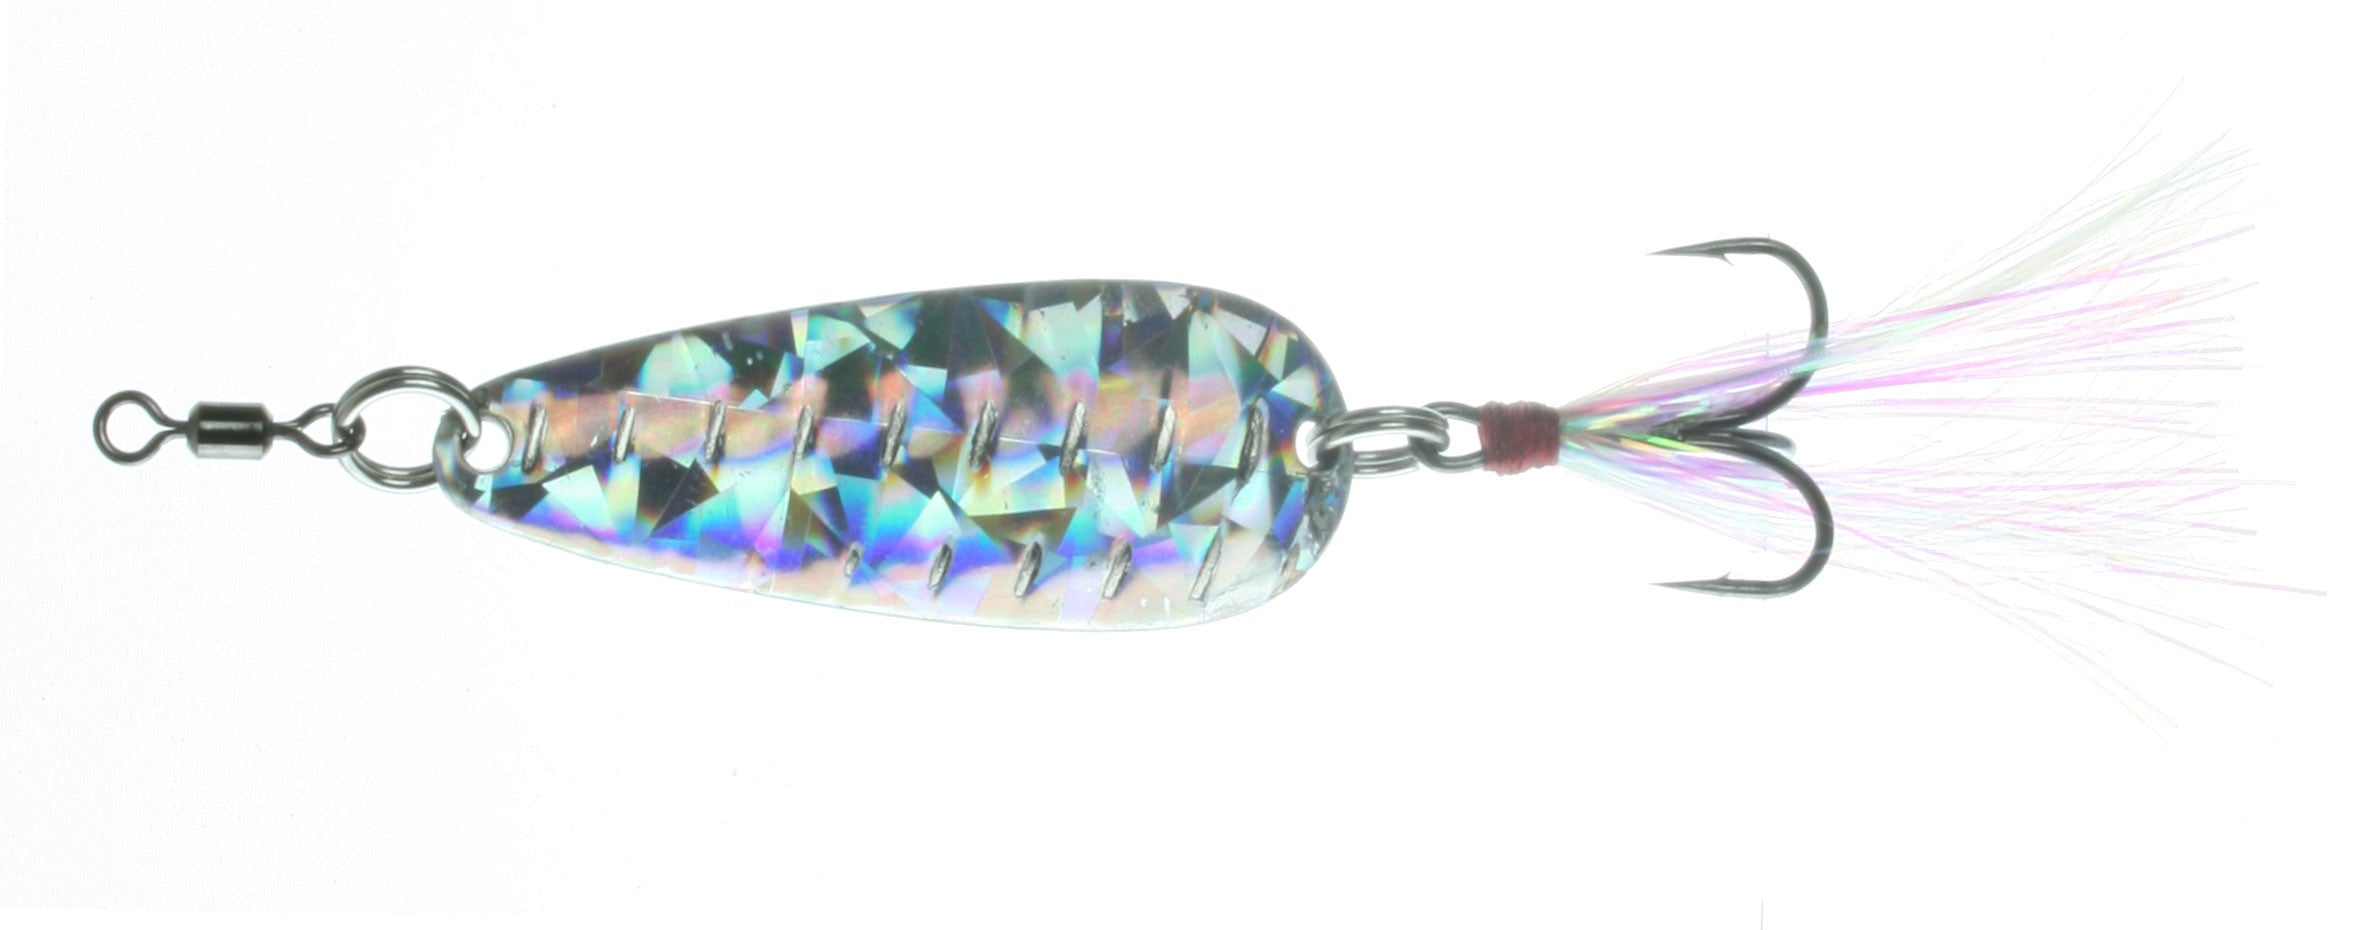 Nichols Lures Lake Fork Flutter Spoon, 5, 1 18 Oz Shattered Glass Silver  FS1-118